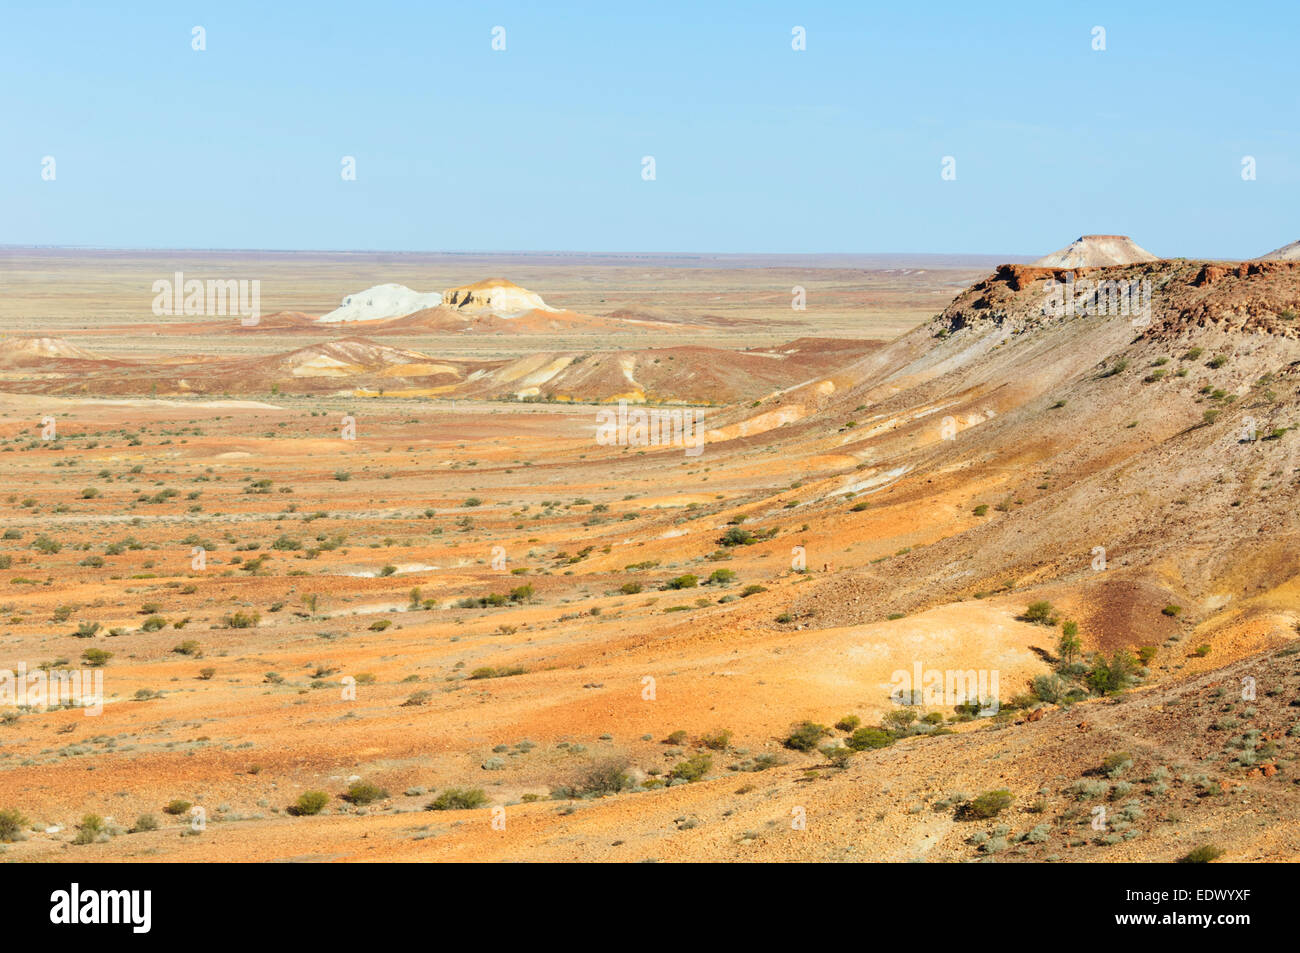 Les échappées sont un désert semi-aride faite de mesas et collines érodées, près de Coober Pedy, Australie du Sud, SA, Australie Banque D'Images